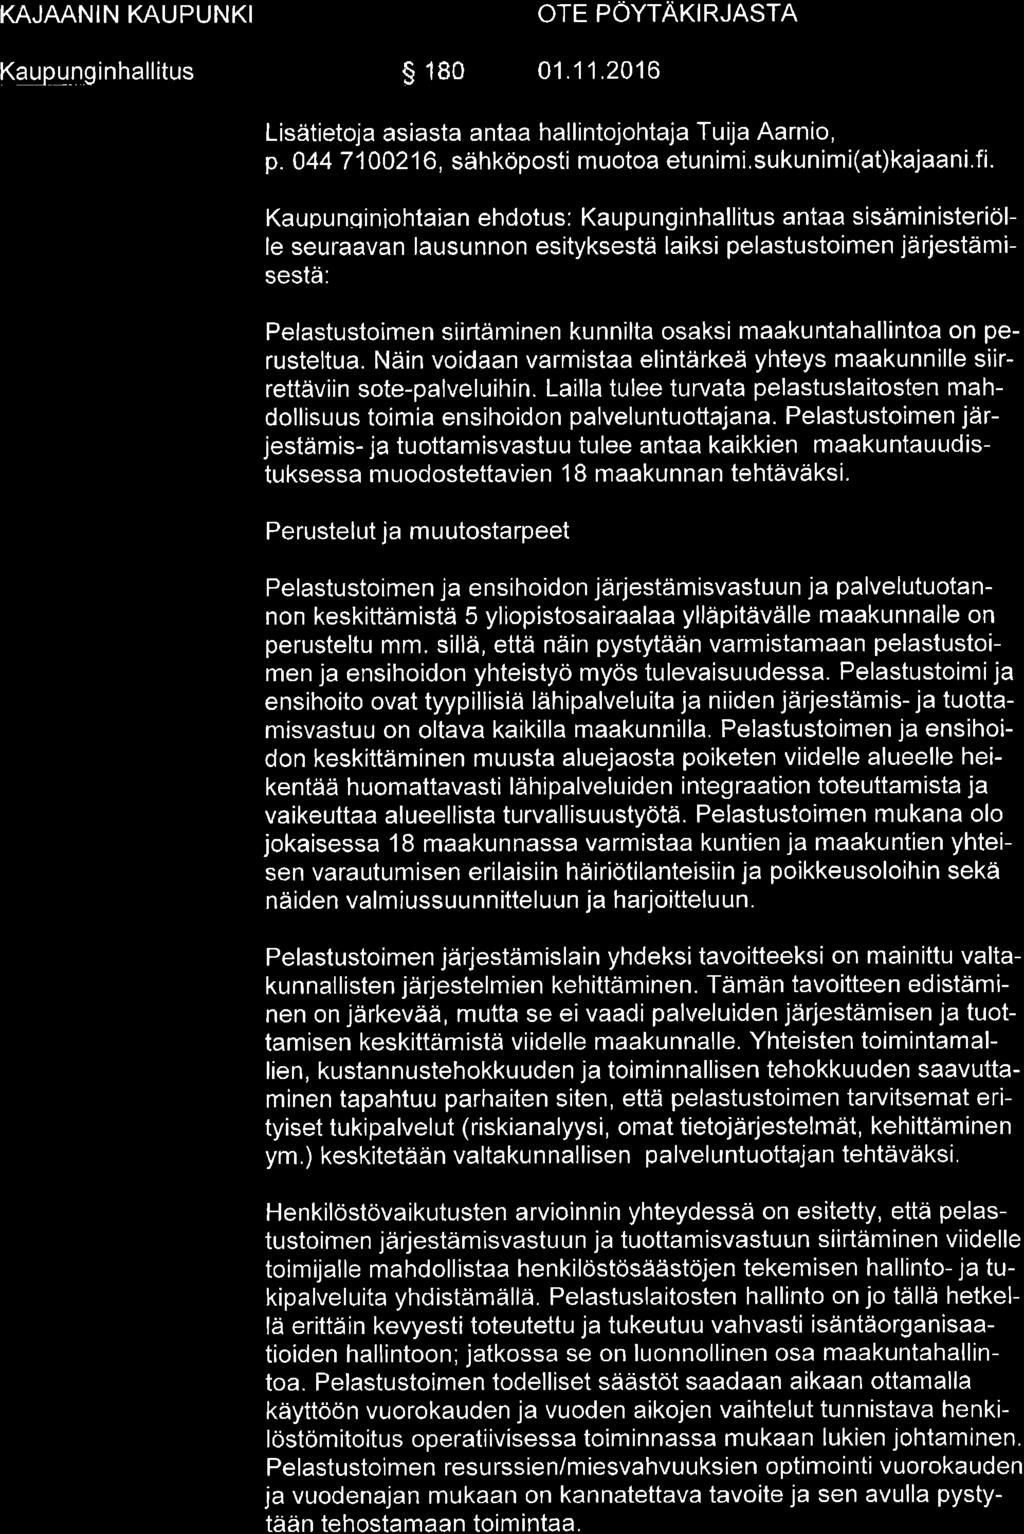 Kqupu g inhallitus s 180 01.11.2016 OTE PÖYTATIN RSTN Lisätietoja asiasta antaa hallintojohtaja Tuija Aarnio, p. 044 7 I 00216, sähköposti muotoa etunimi. sukunimi(at)kajaani.fi.